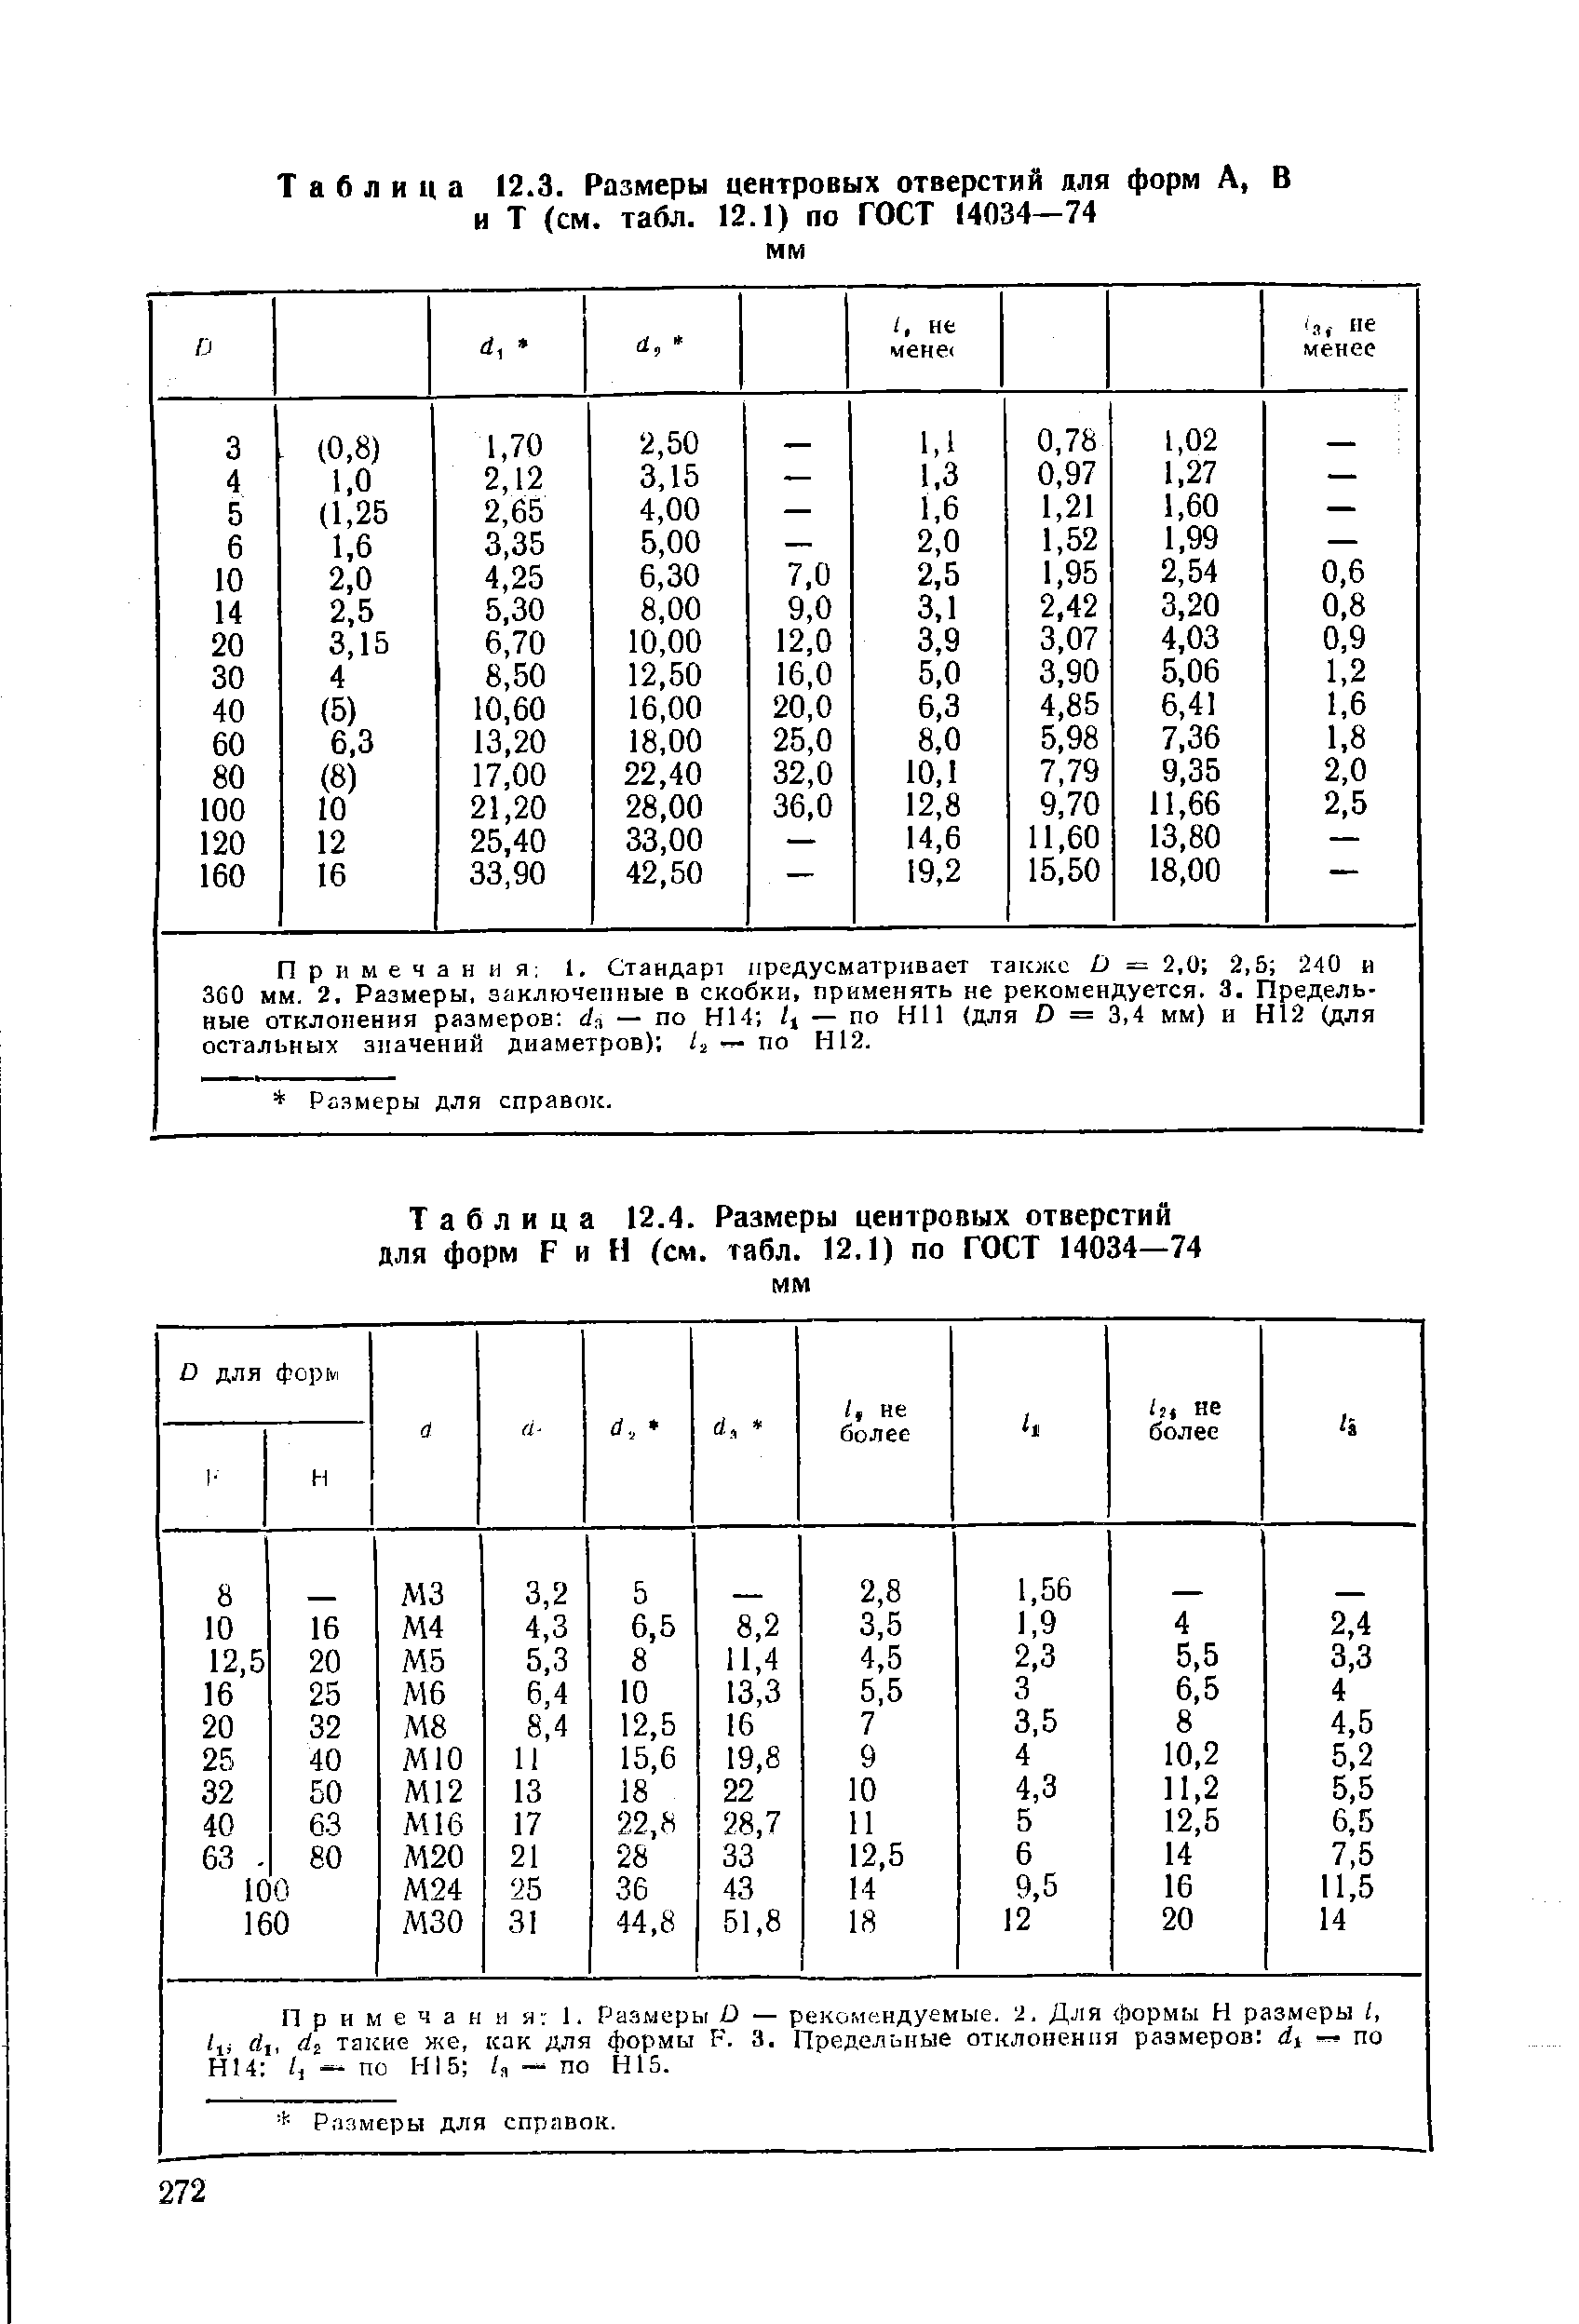 Таблица 12.3. Размеры центровых отверстий для форм А, В и Т (см. табл. 12.1) по ГОСТ 14034—74 мм
